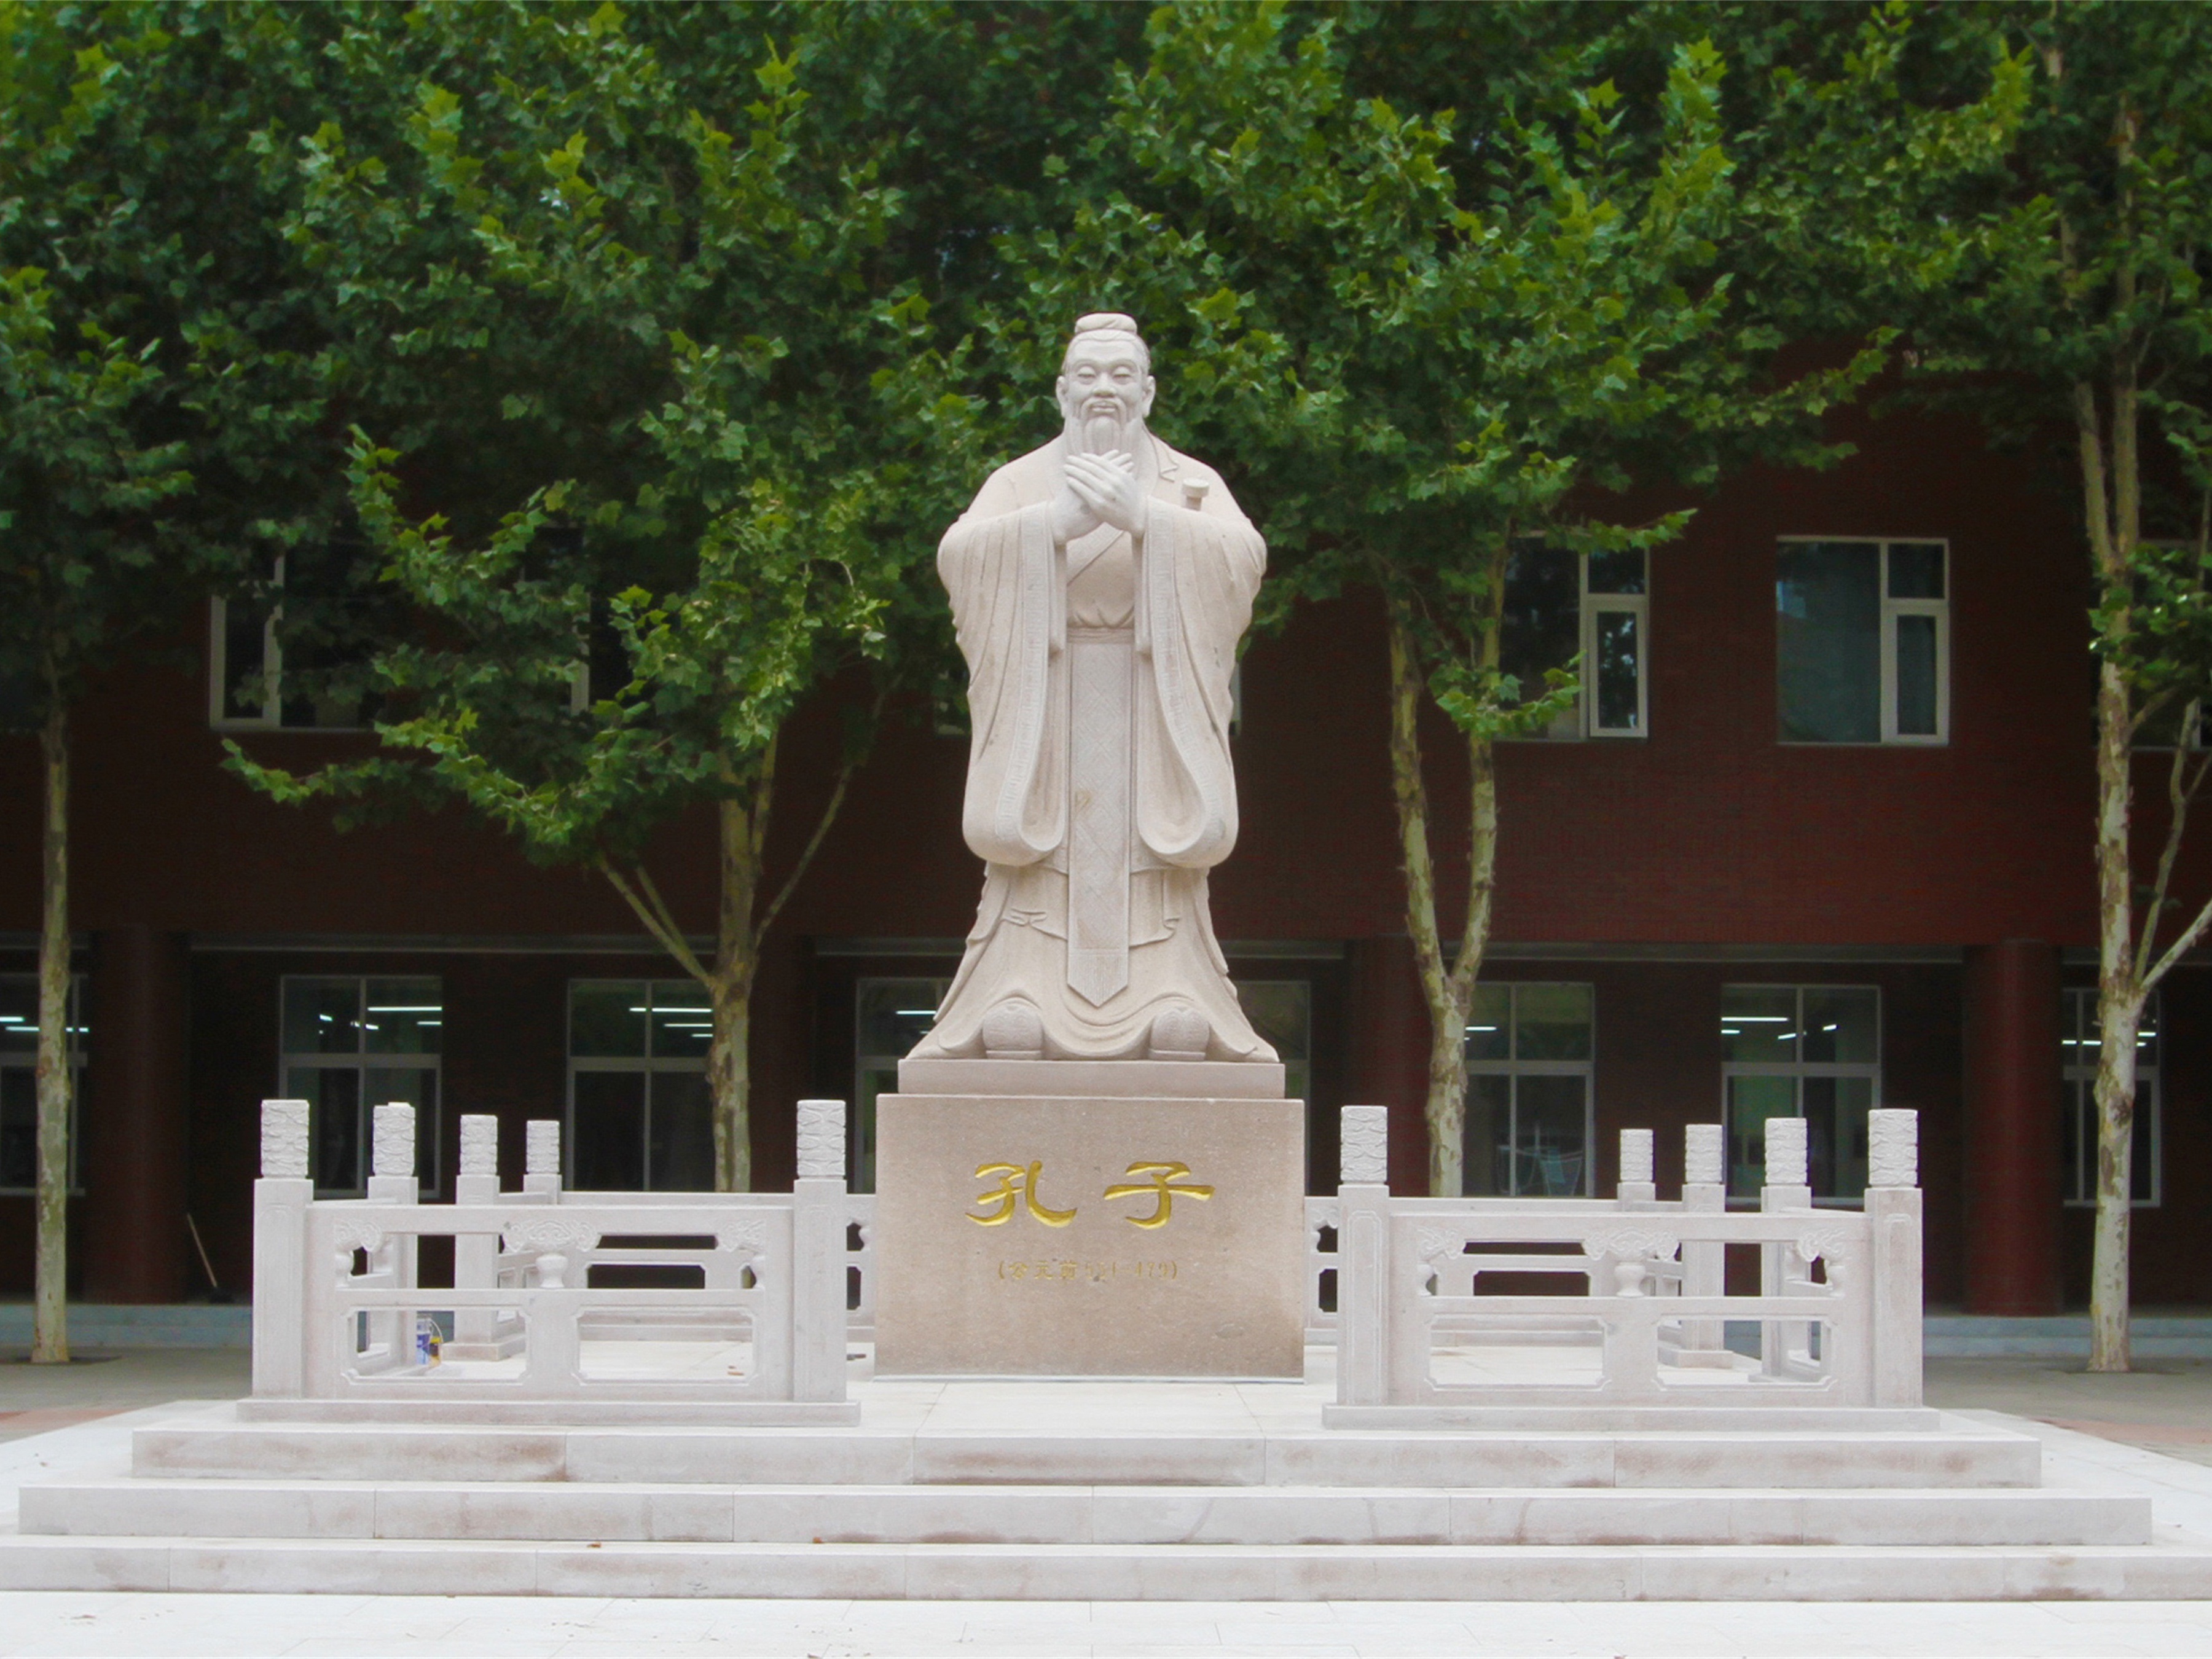 北京王府学校